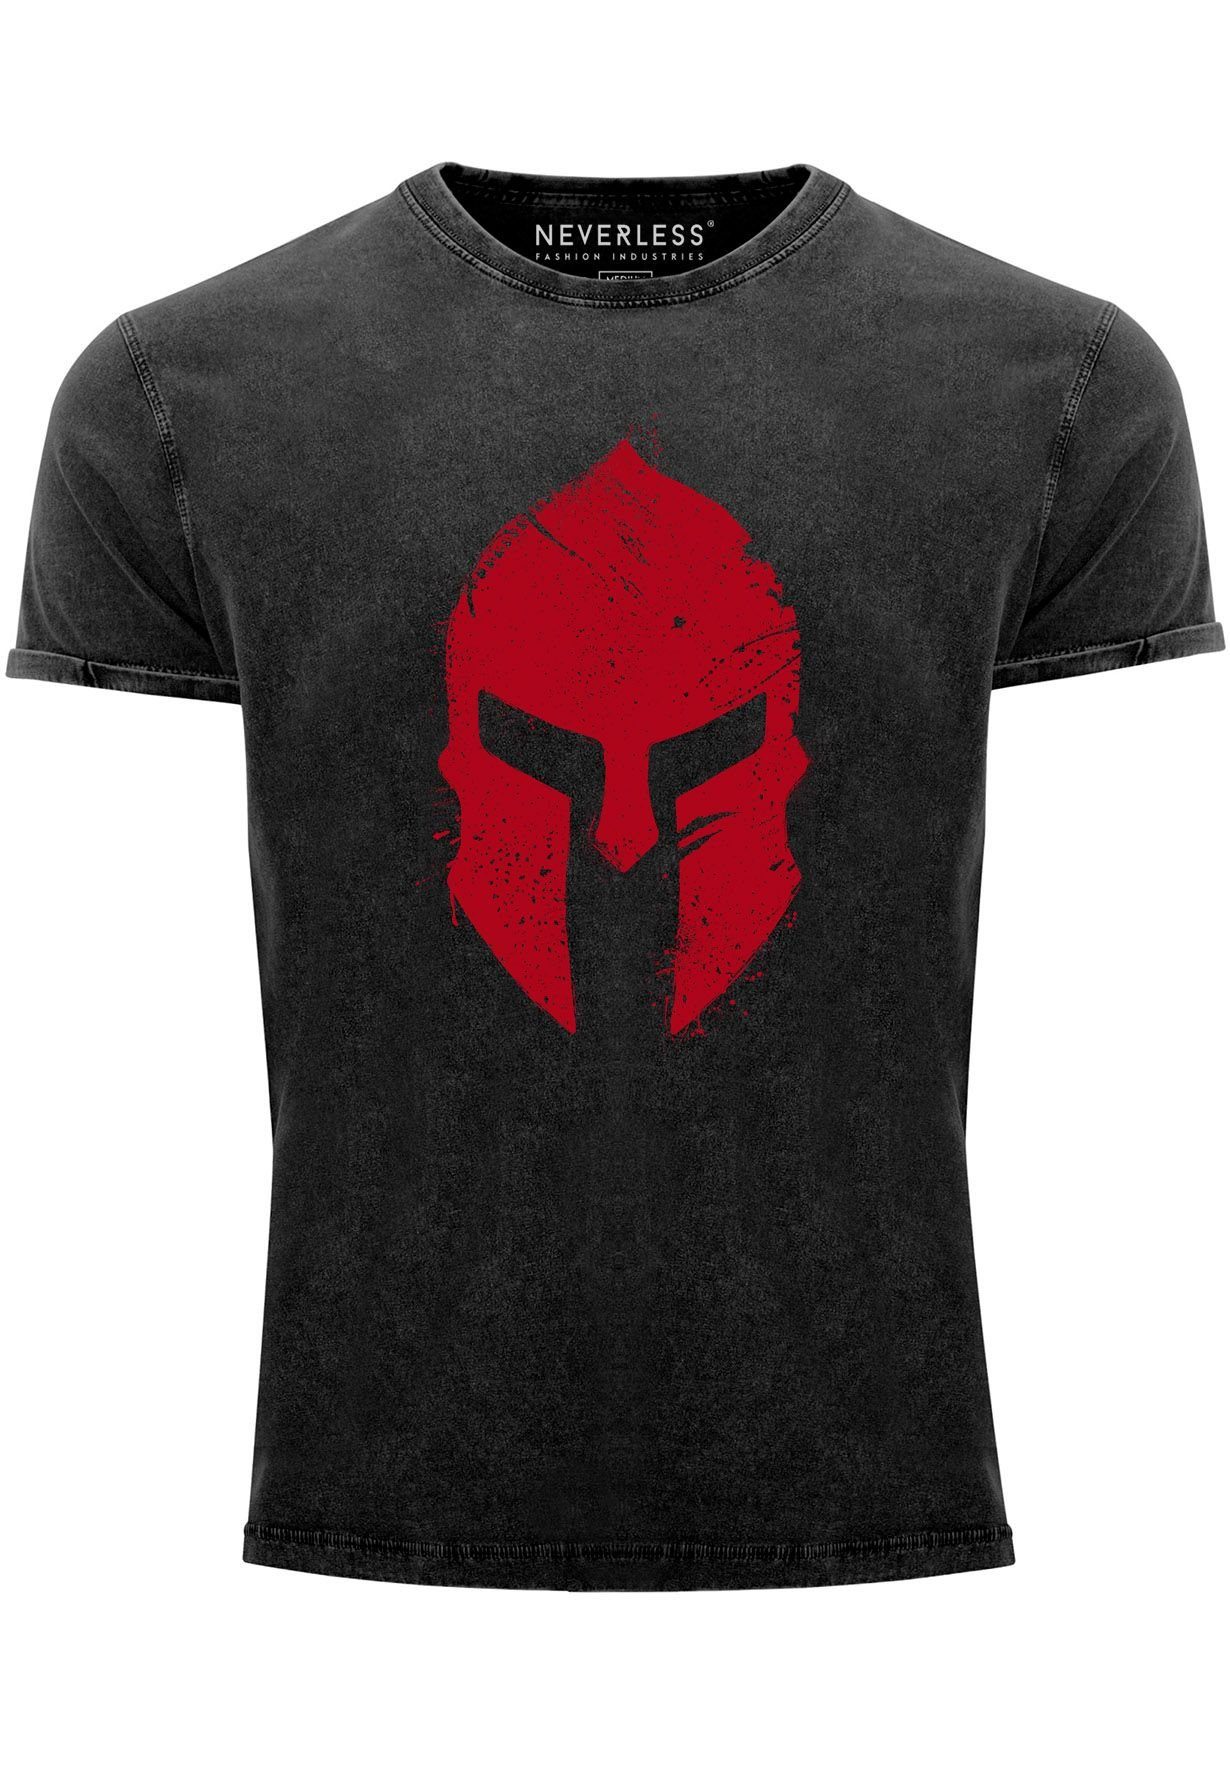 Neverless Print-Shirt Herren Vintage Shirt Print Sparta-Helm Aufdruck Gladiator Krieger Warr mit Print schwarz-rot